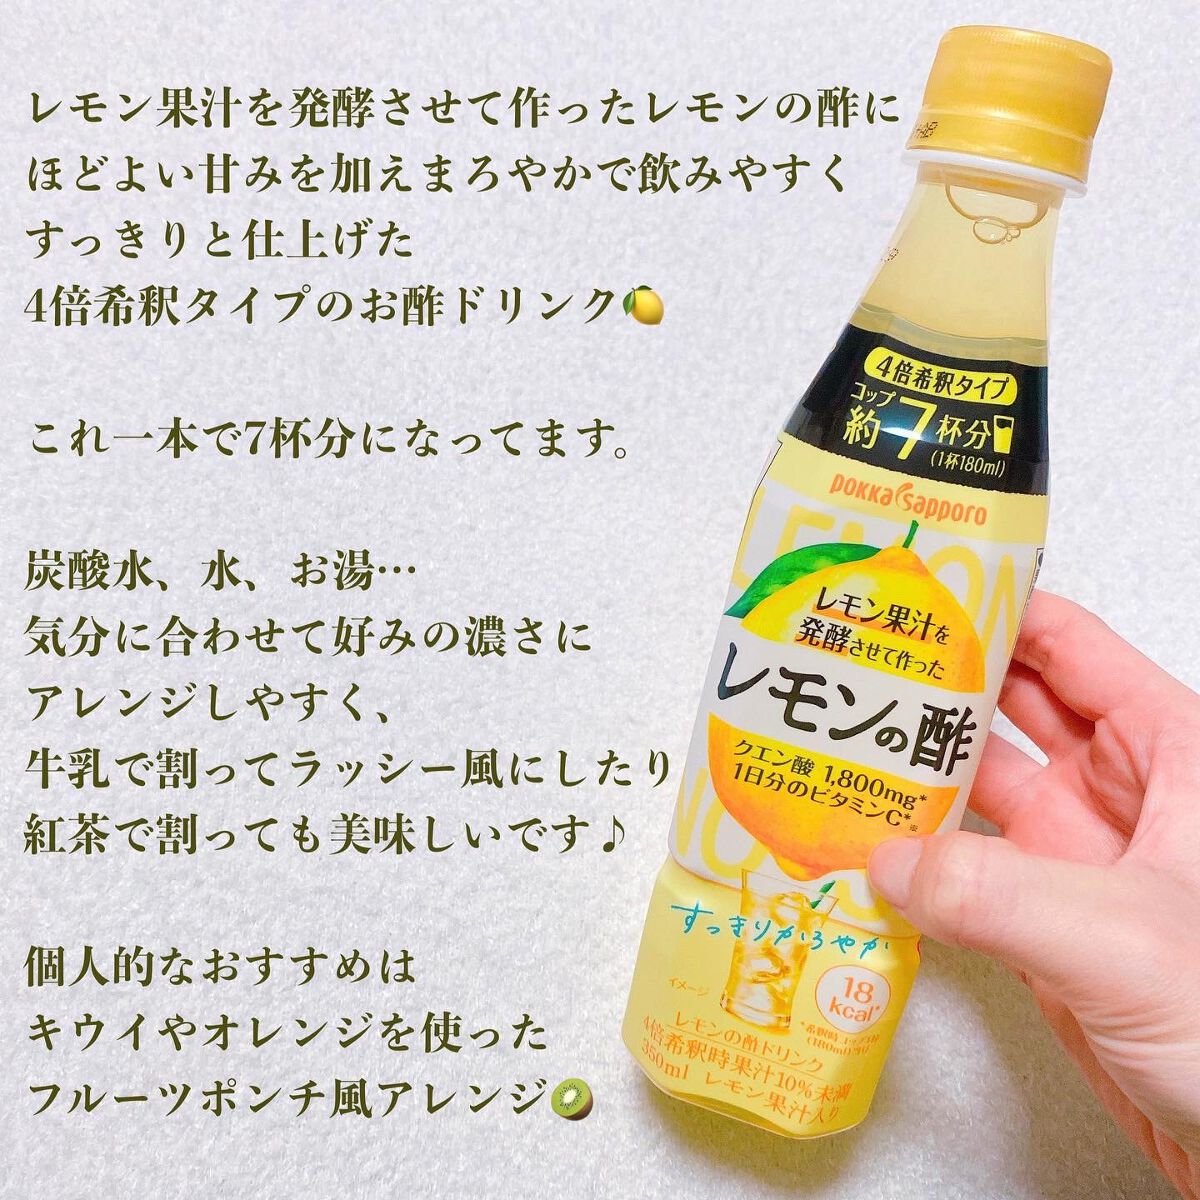 ポッカ 甘くないレモンの酢24本セット無糖 4倍希釈タイプ  350ml